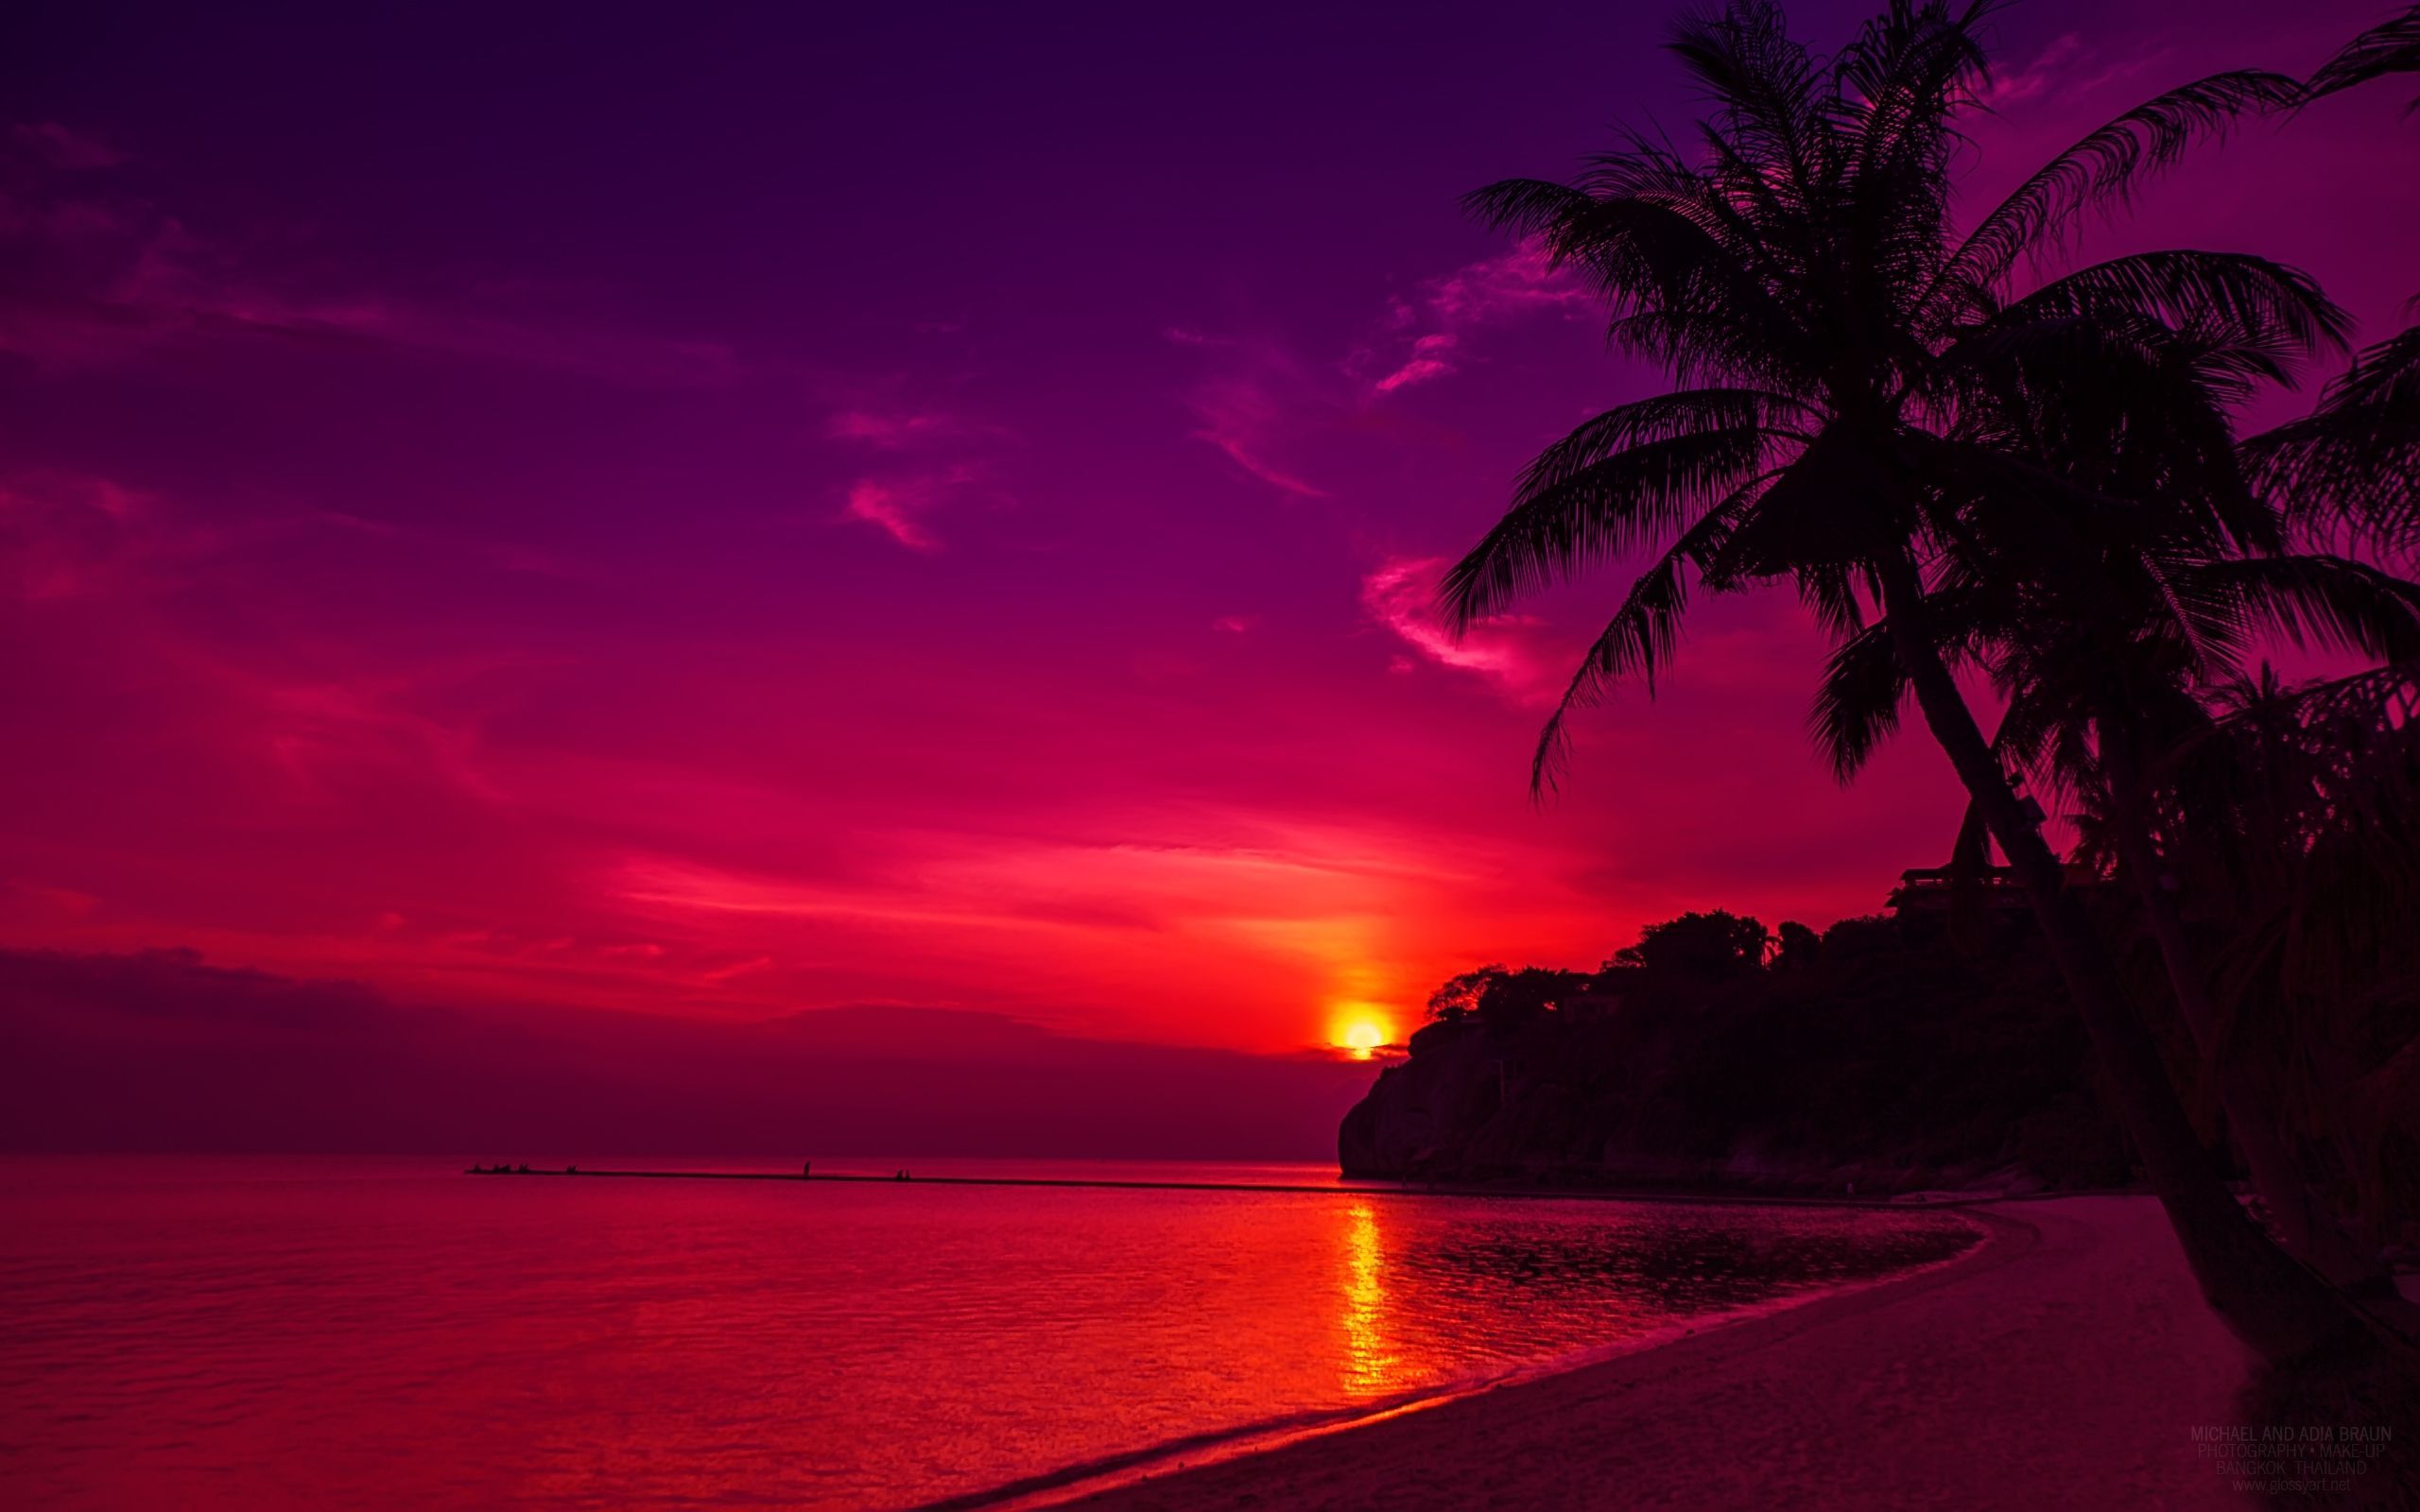 Beach Sunset # 2560x1600. All For Desktop. Beach sunset wallpaper, Sunset wallpaper, Beach sunset image